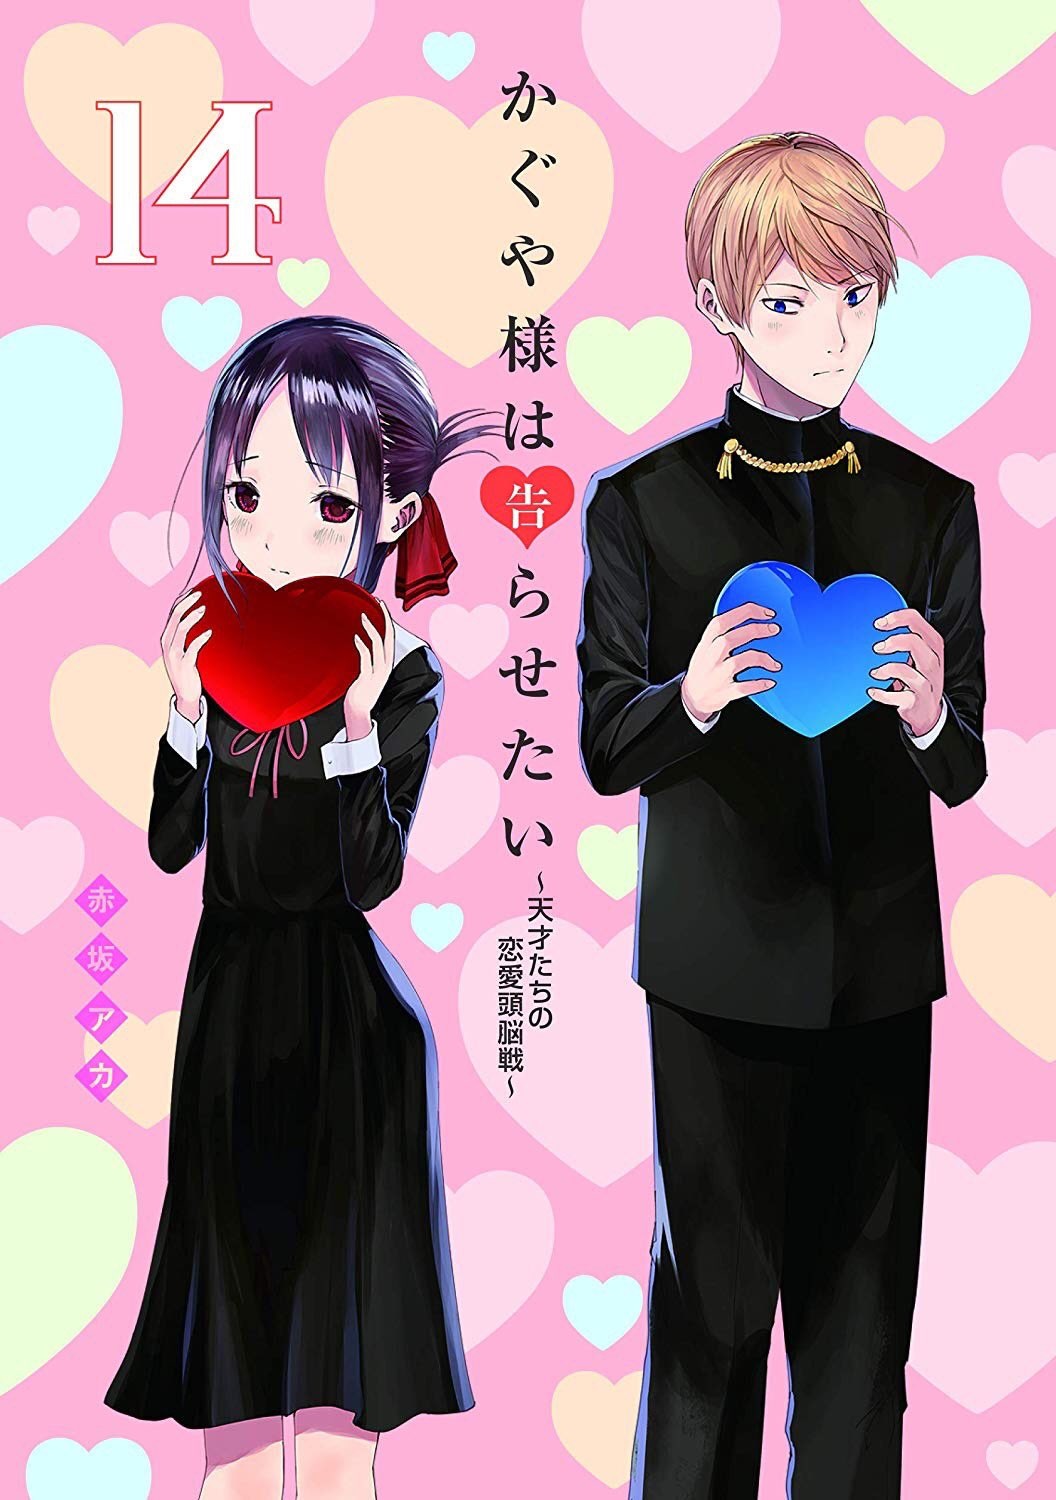 Kaguya-sama: Love Is War, Chapter 136 - Kaguya-sama: Love Is War Manga  Online